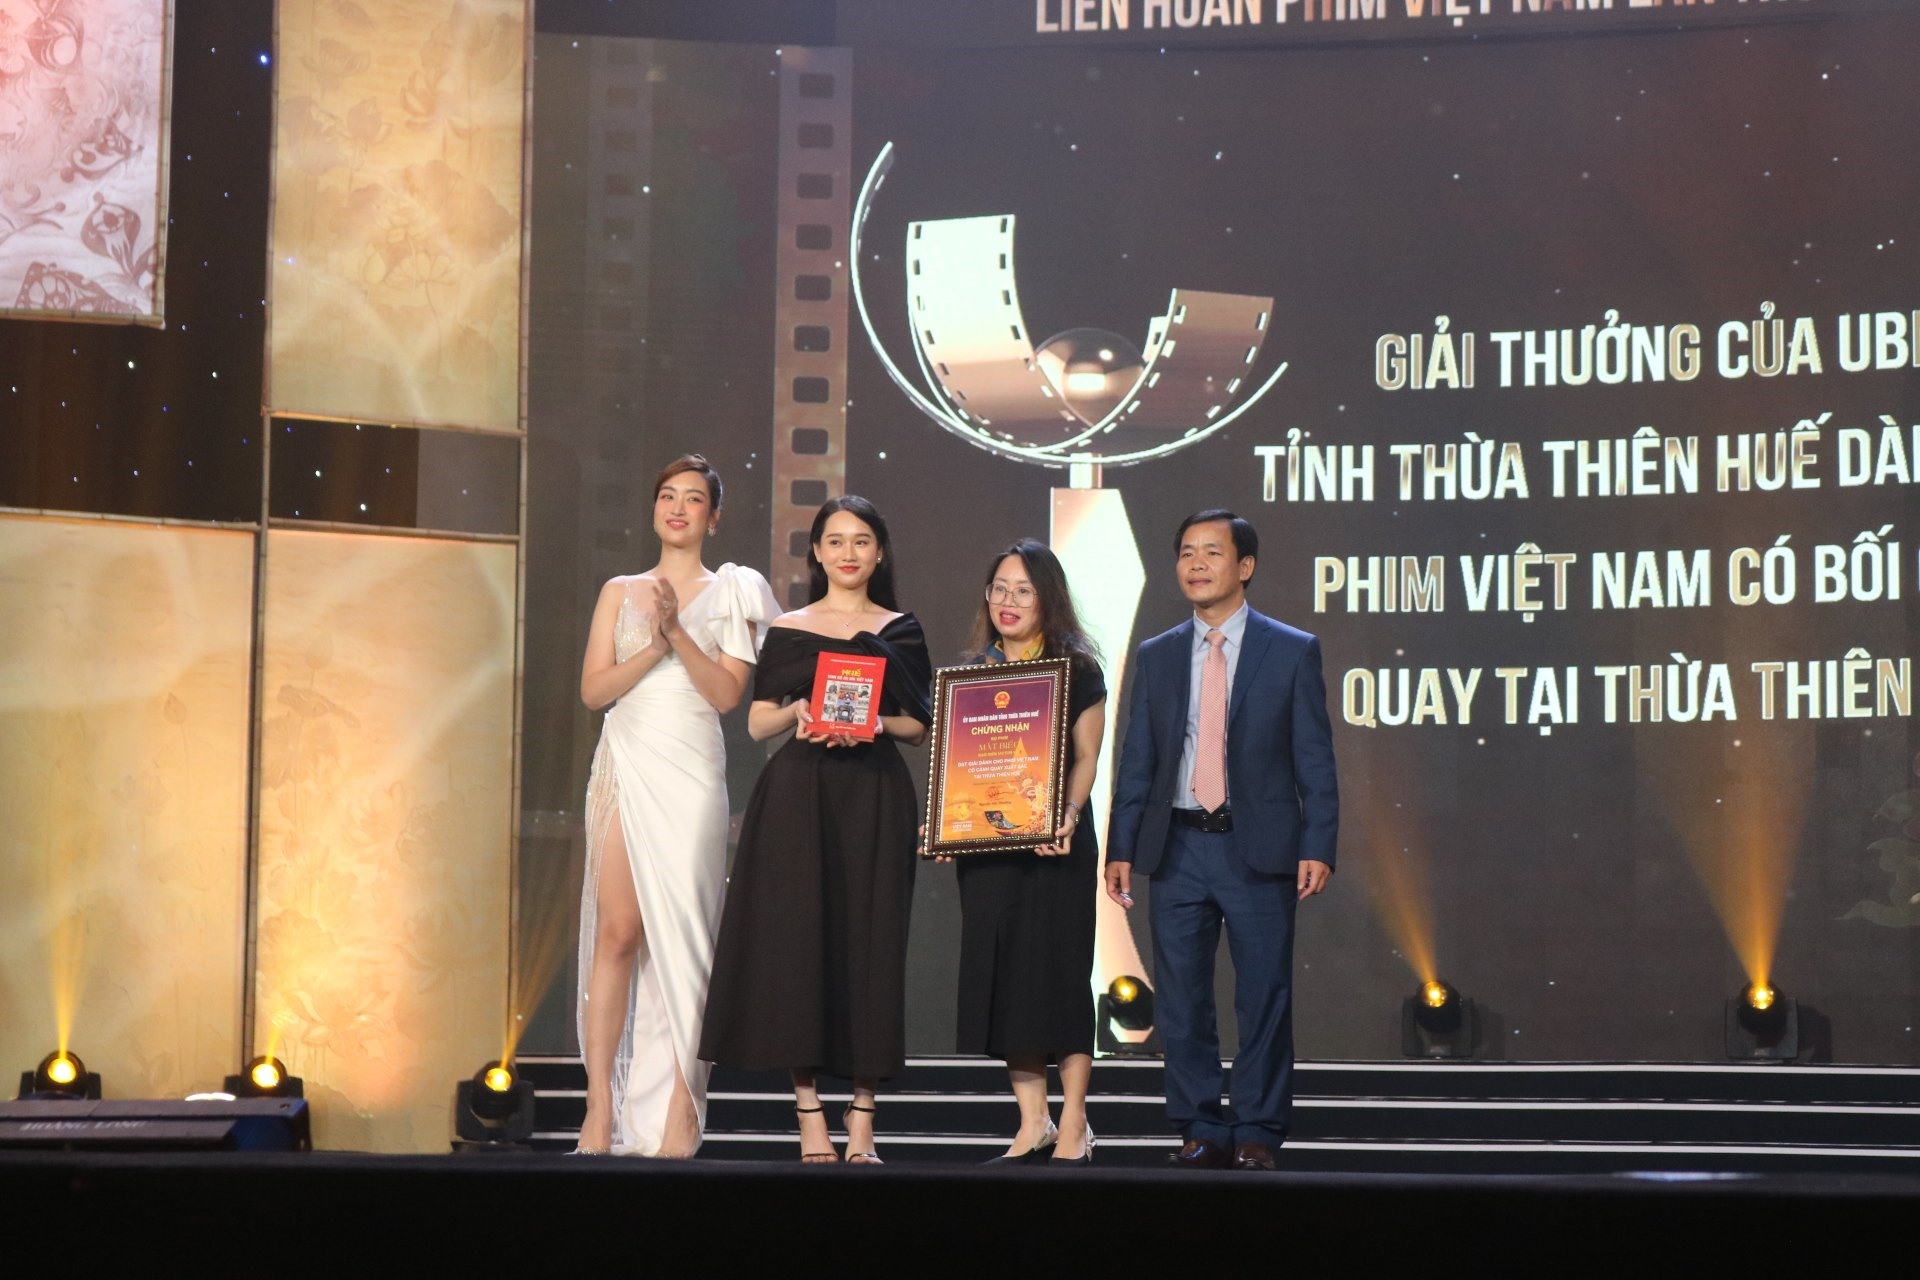 Phim “Mắt biếc” nhận giải thưởng do UBND tỉnh Thừa Thiên Huế trao tặng, là phim được thực hiện nhiều cảnh quay tại Huế và đã tạo hiệu ứng tích cực sau khi phim khởi chiếu. Ảnh: VGP